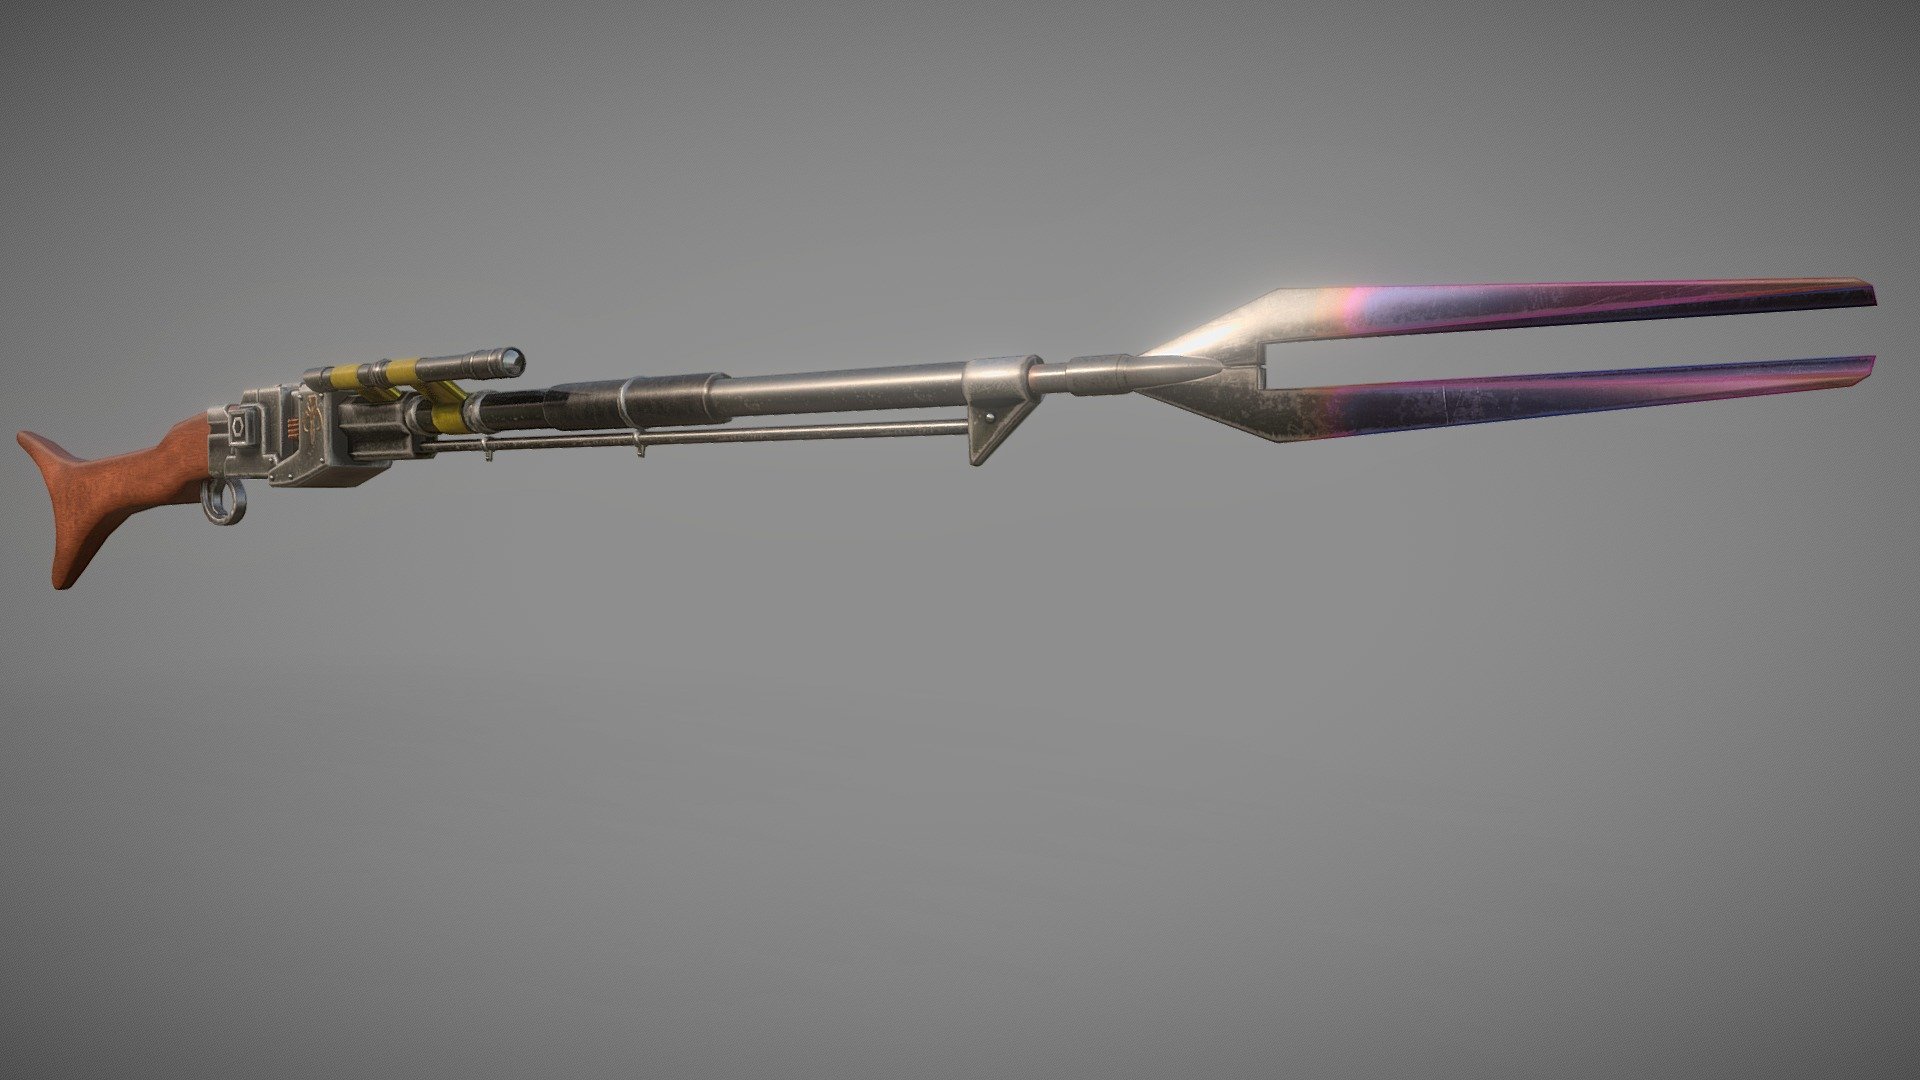 Mandalorian Rifle - Amban Phase Pulse Blaster